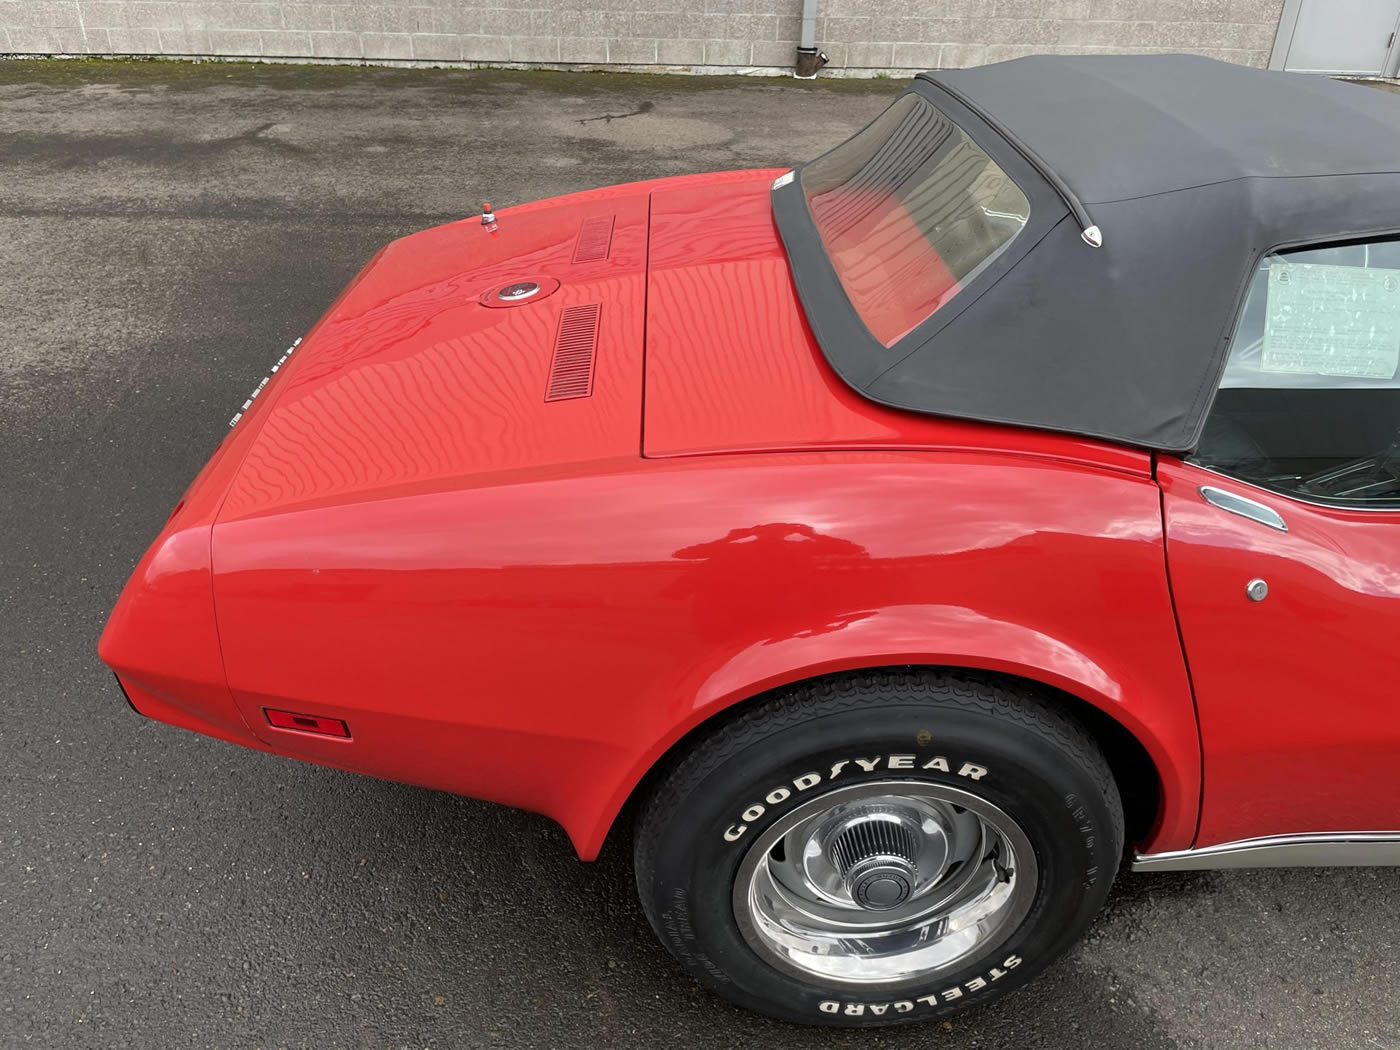 1975 Corvette Convertible in Mille Miglia Red